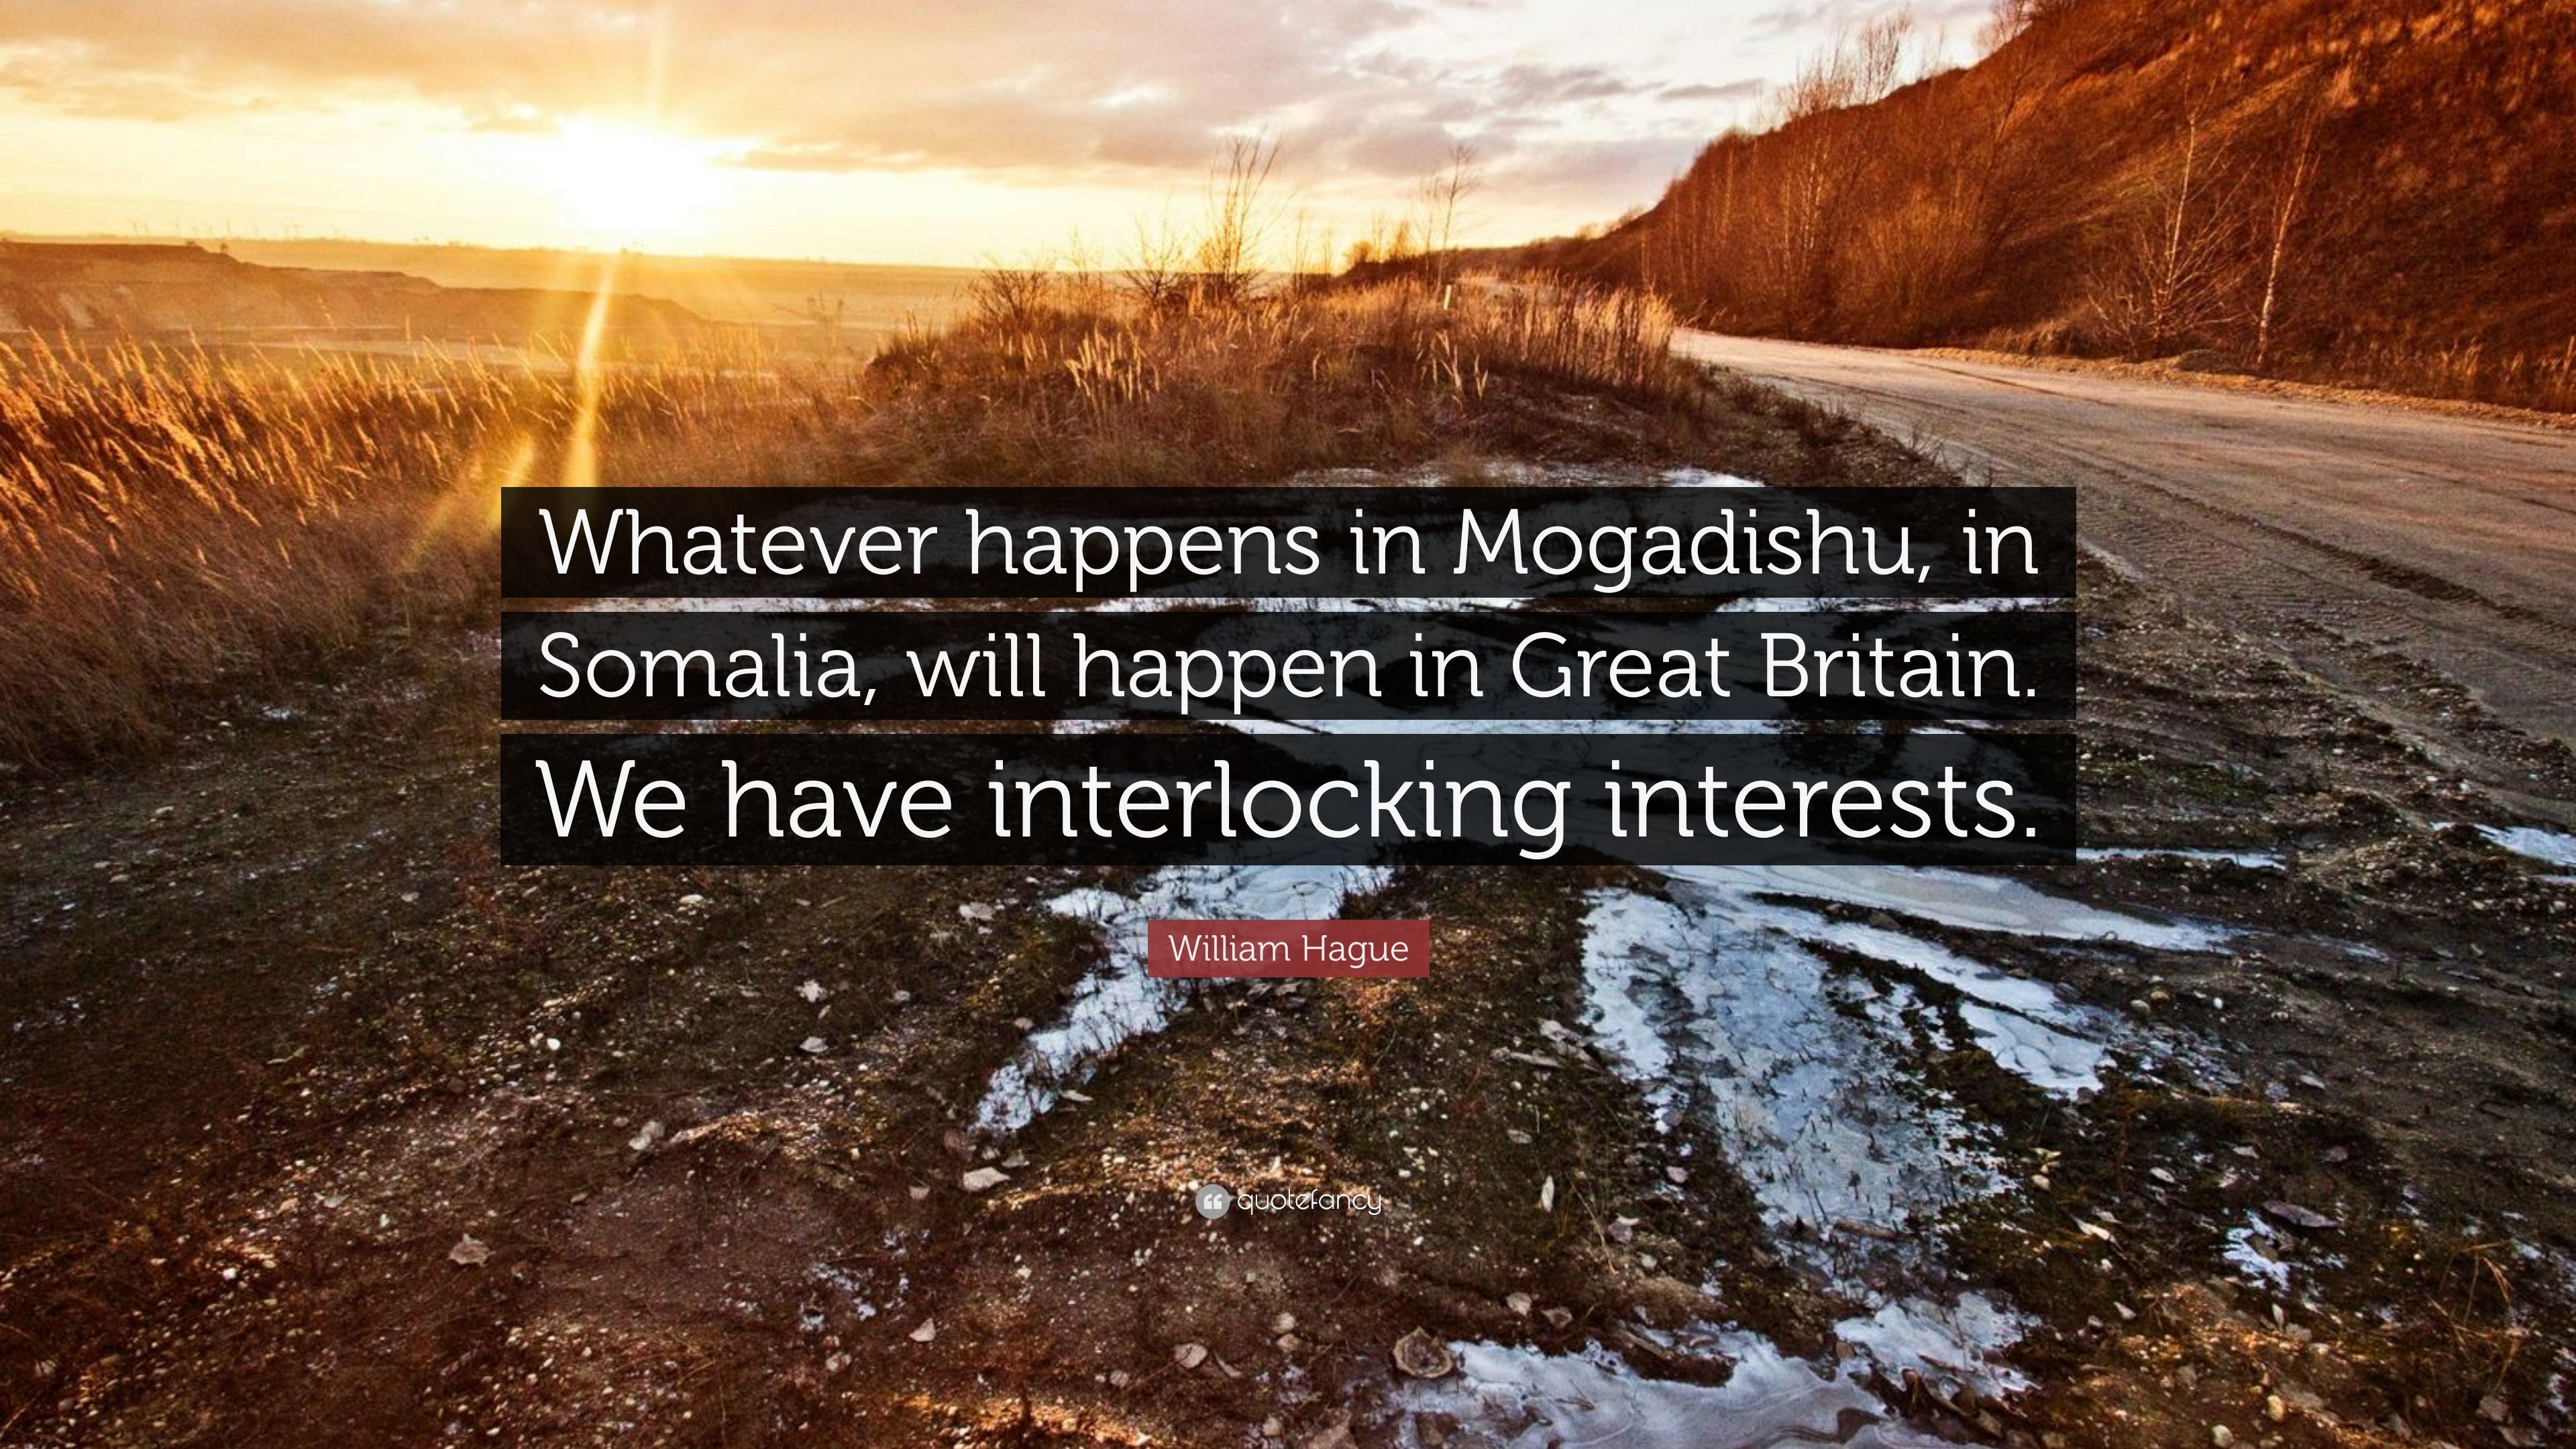 William Hague Quote: “Whatever happens in Mogadishu, in Somalia